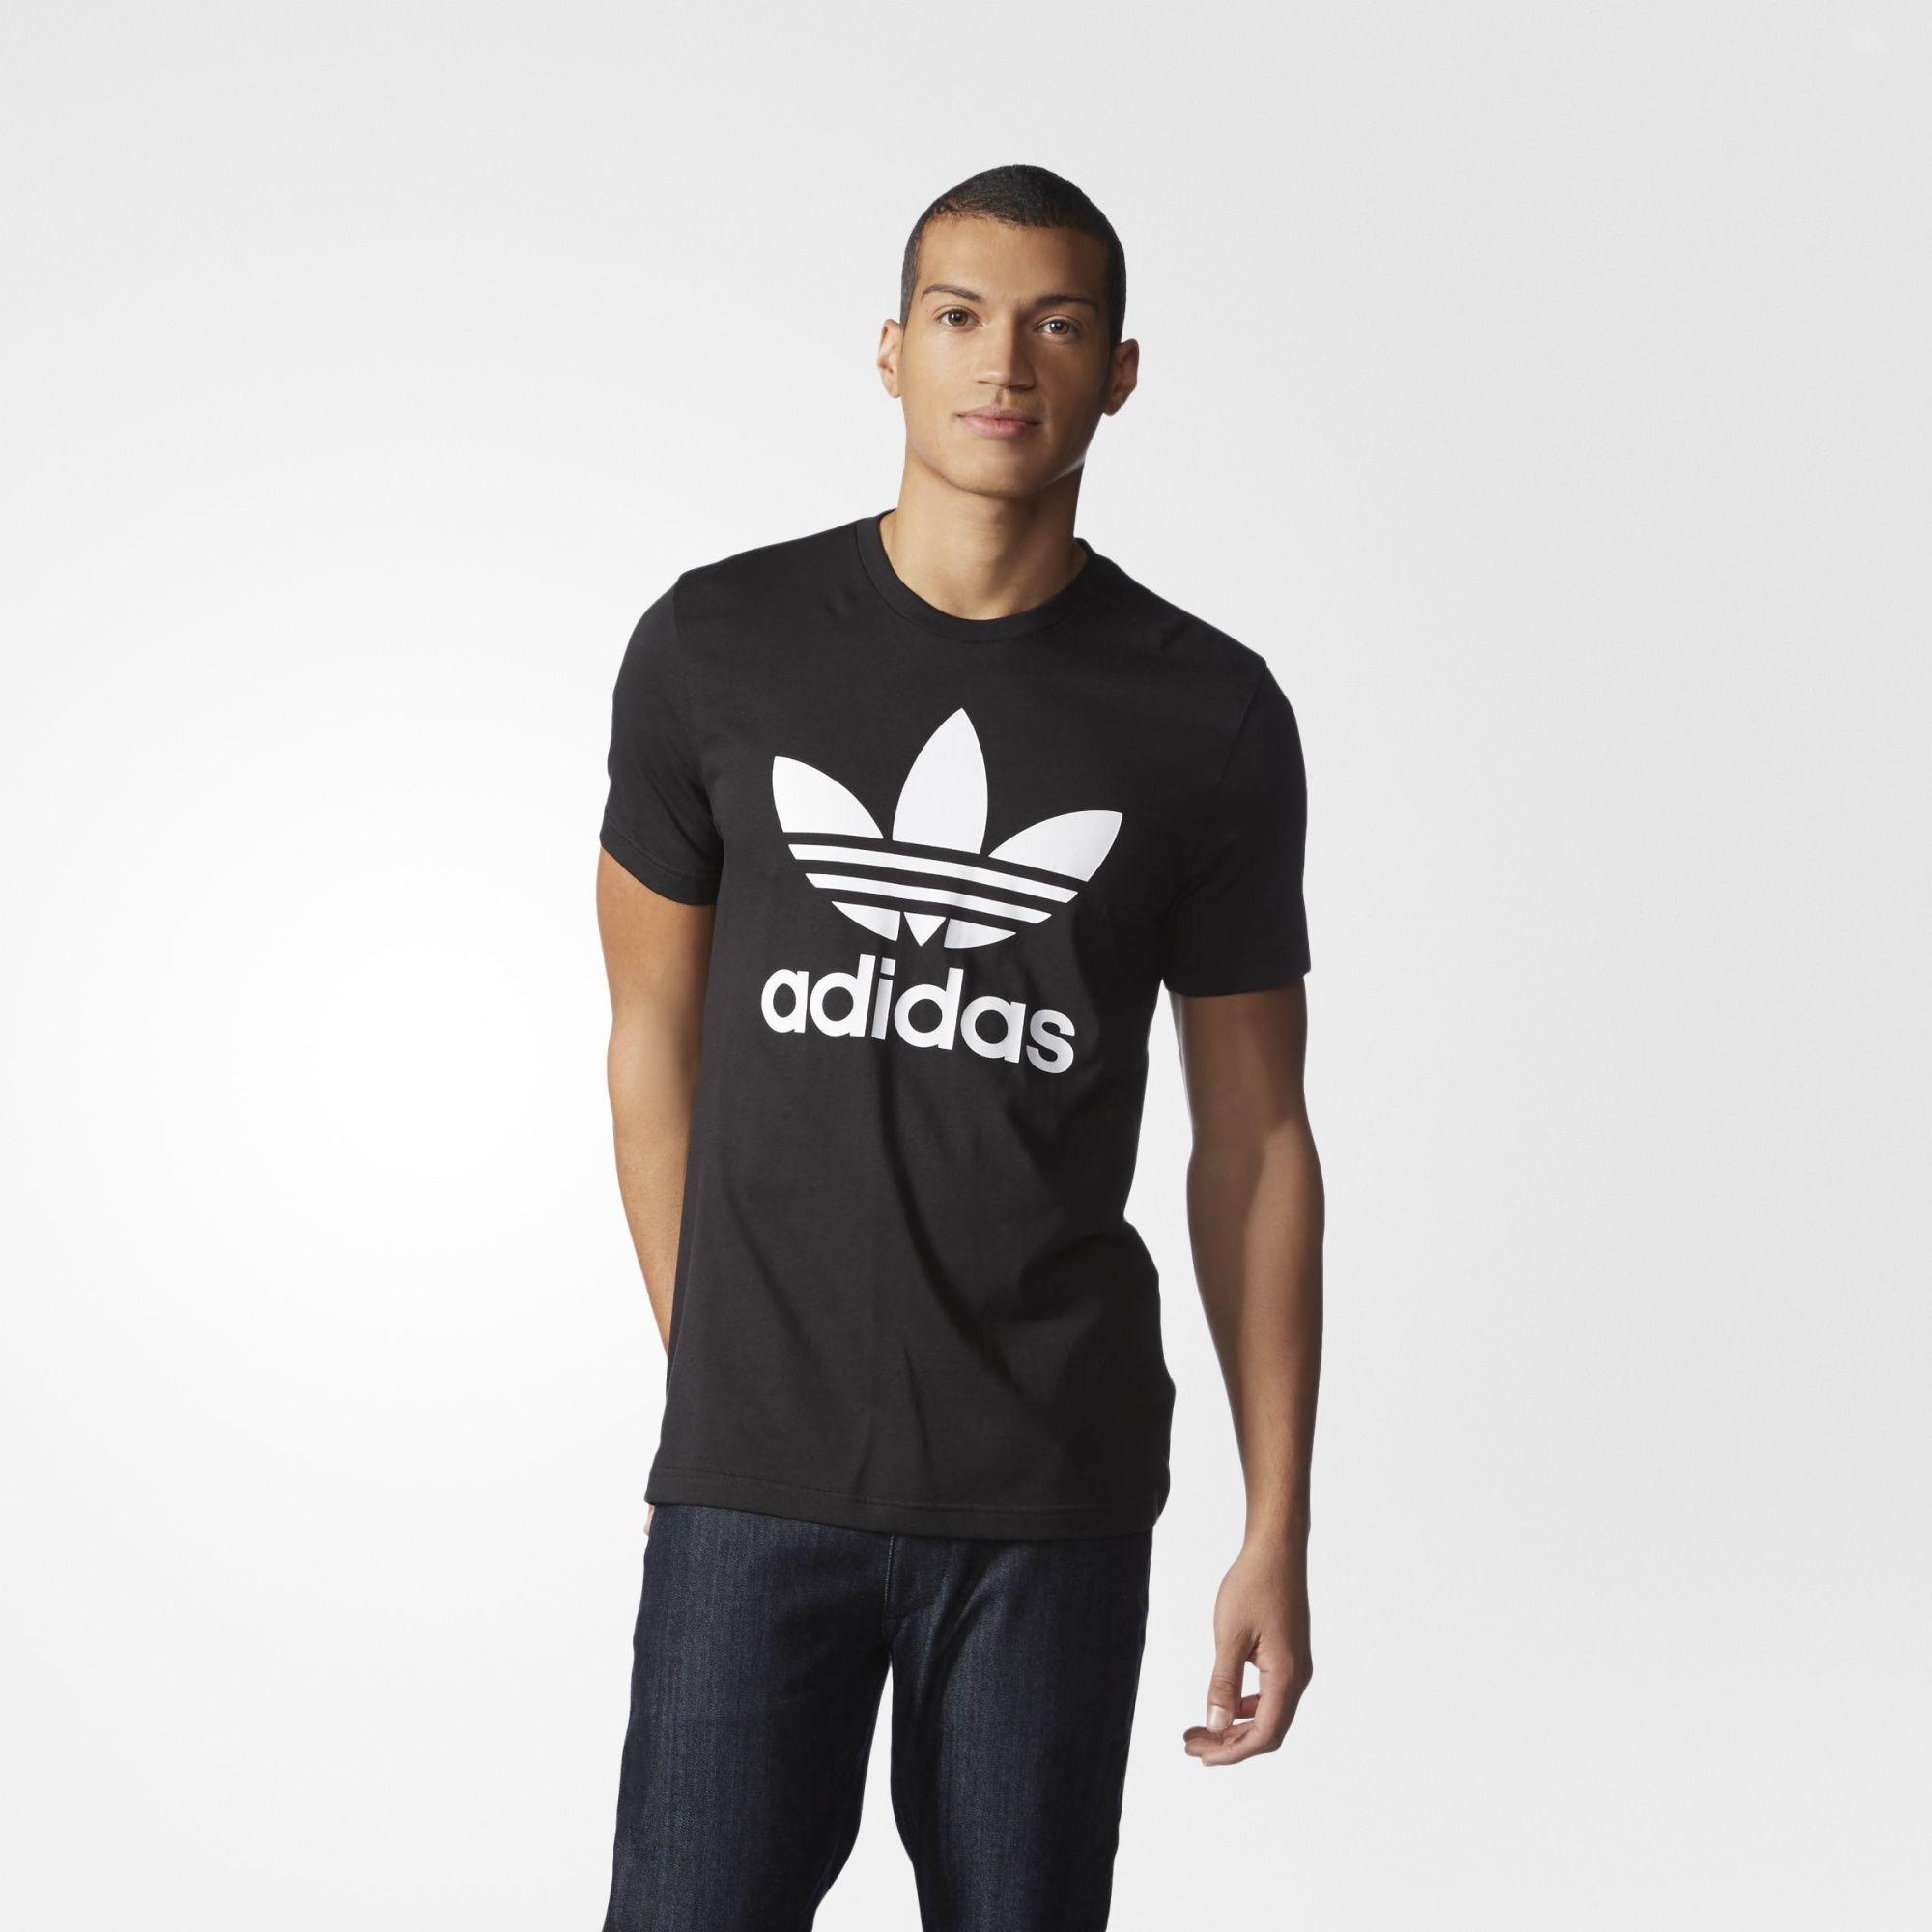 Adidas Originals Trefoil Logo - SIZE: Medium This adidas Originals Trefoil Tee puts the Trefoil logo ...